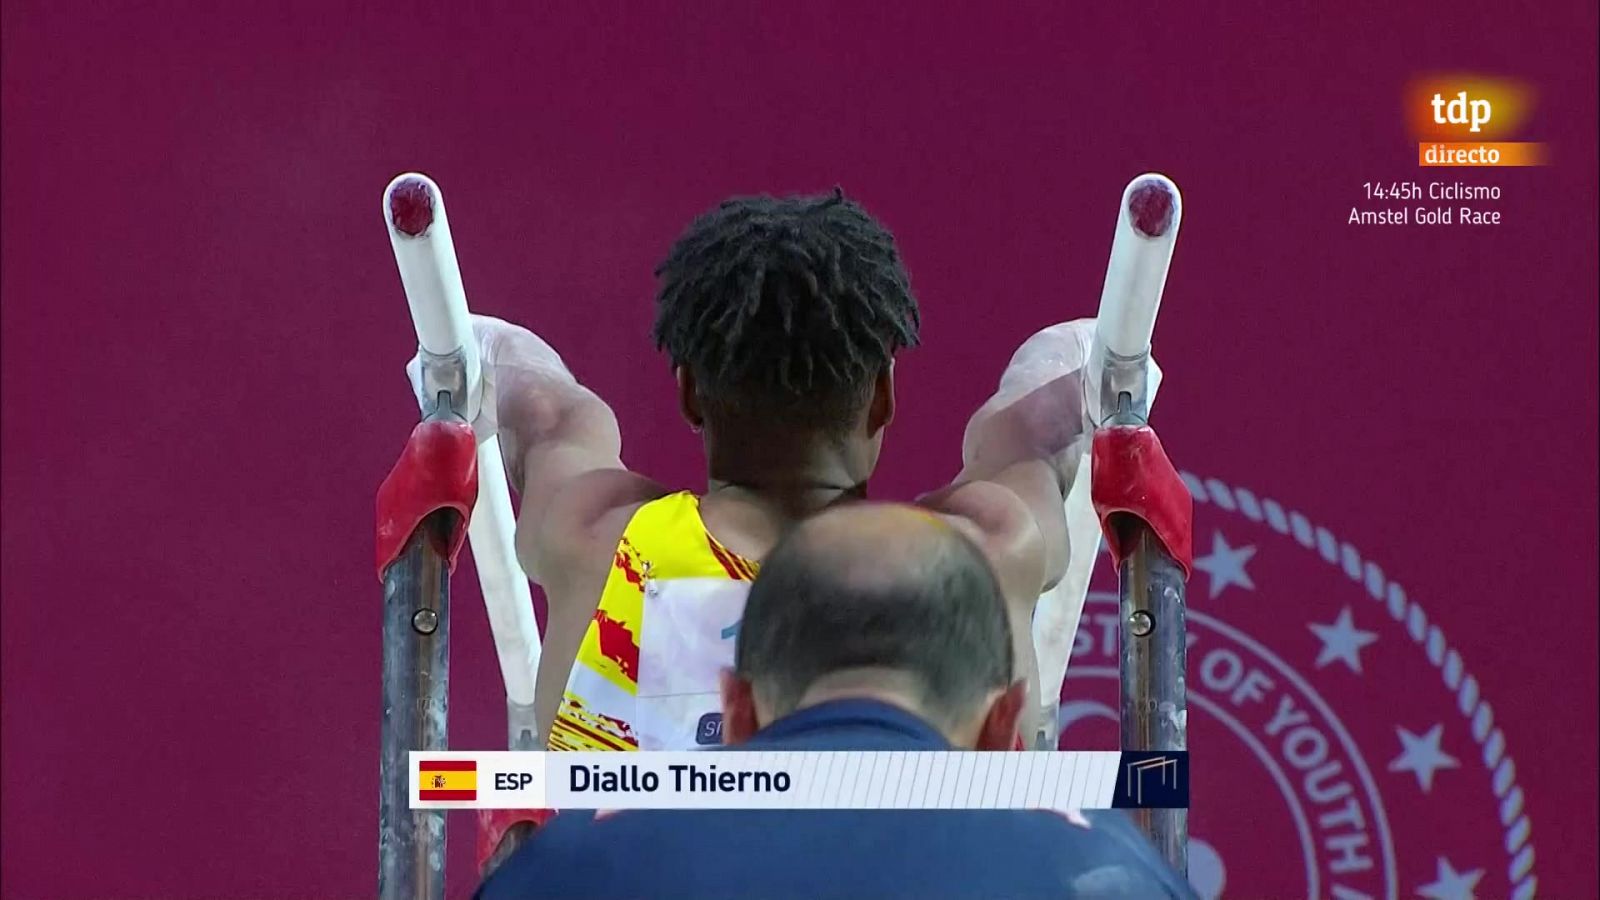 El español Thierno Diallo logra el bronce en barras paralelas en el Campeonato de Europa